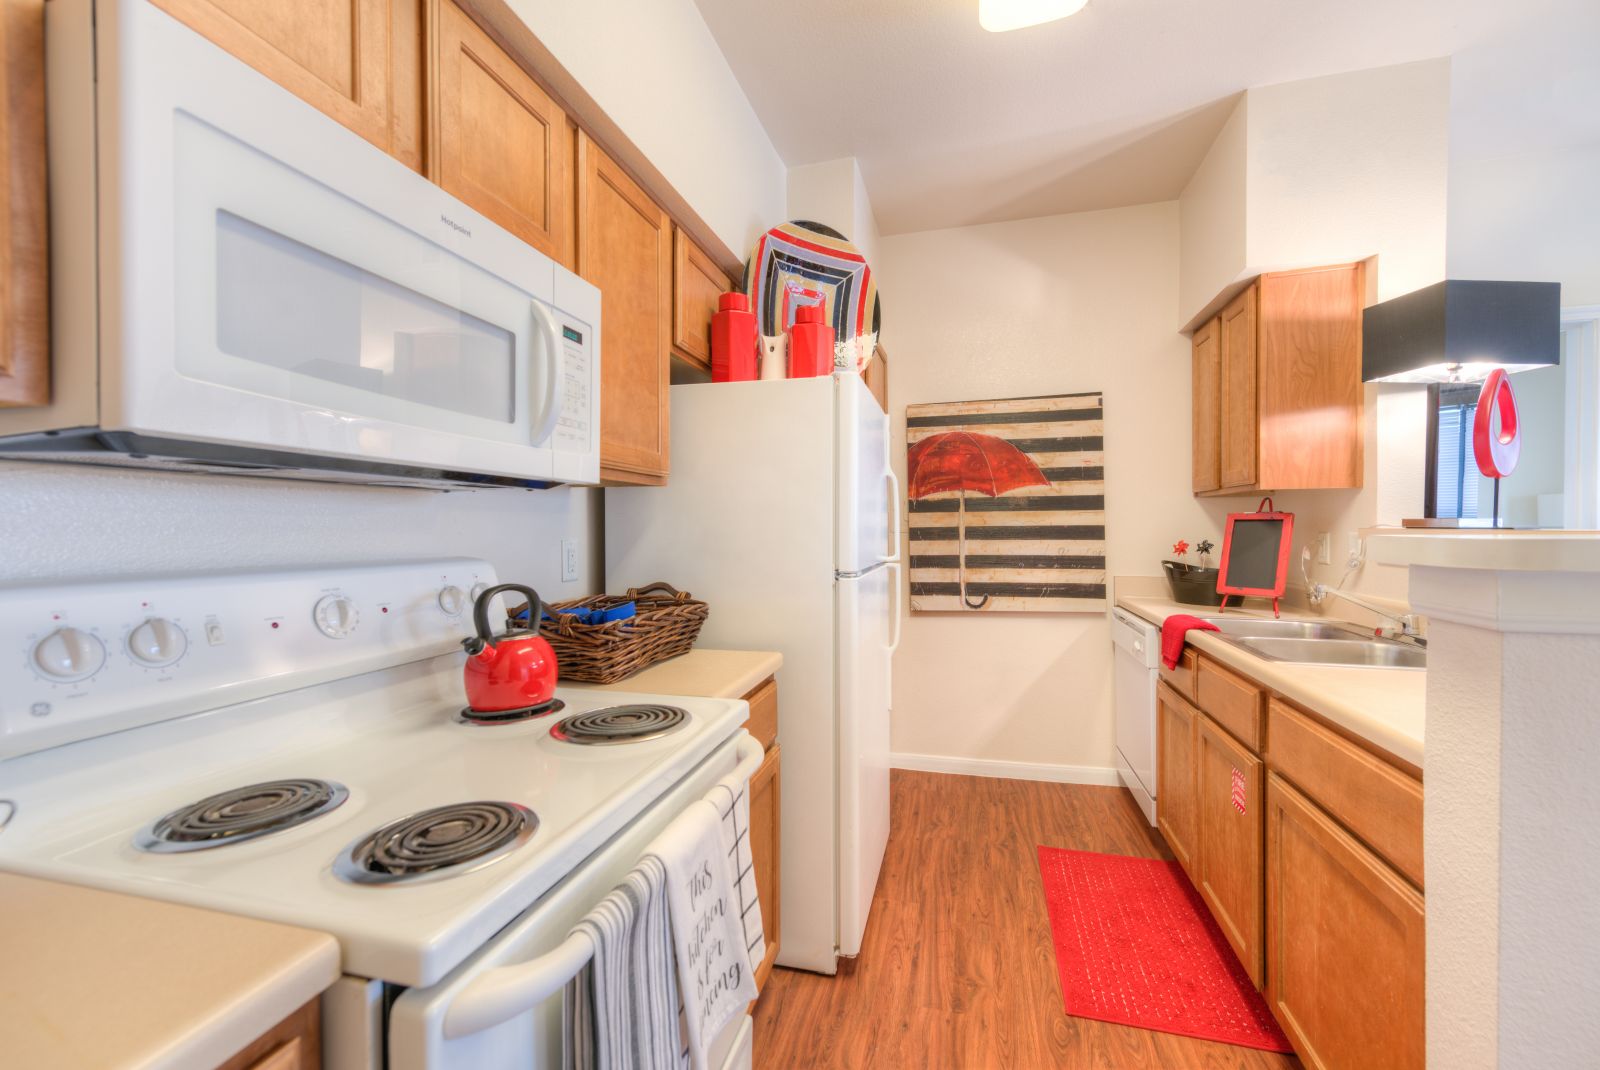 apartment kitchen with white appliances